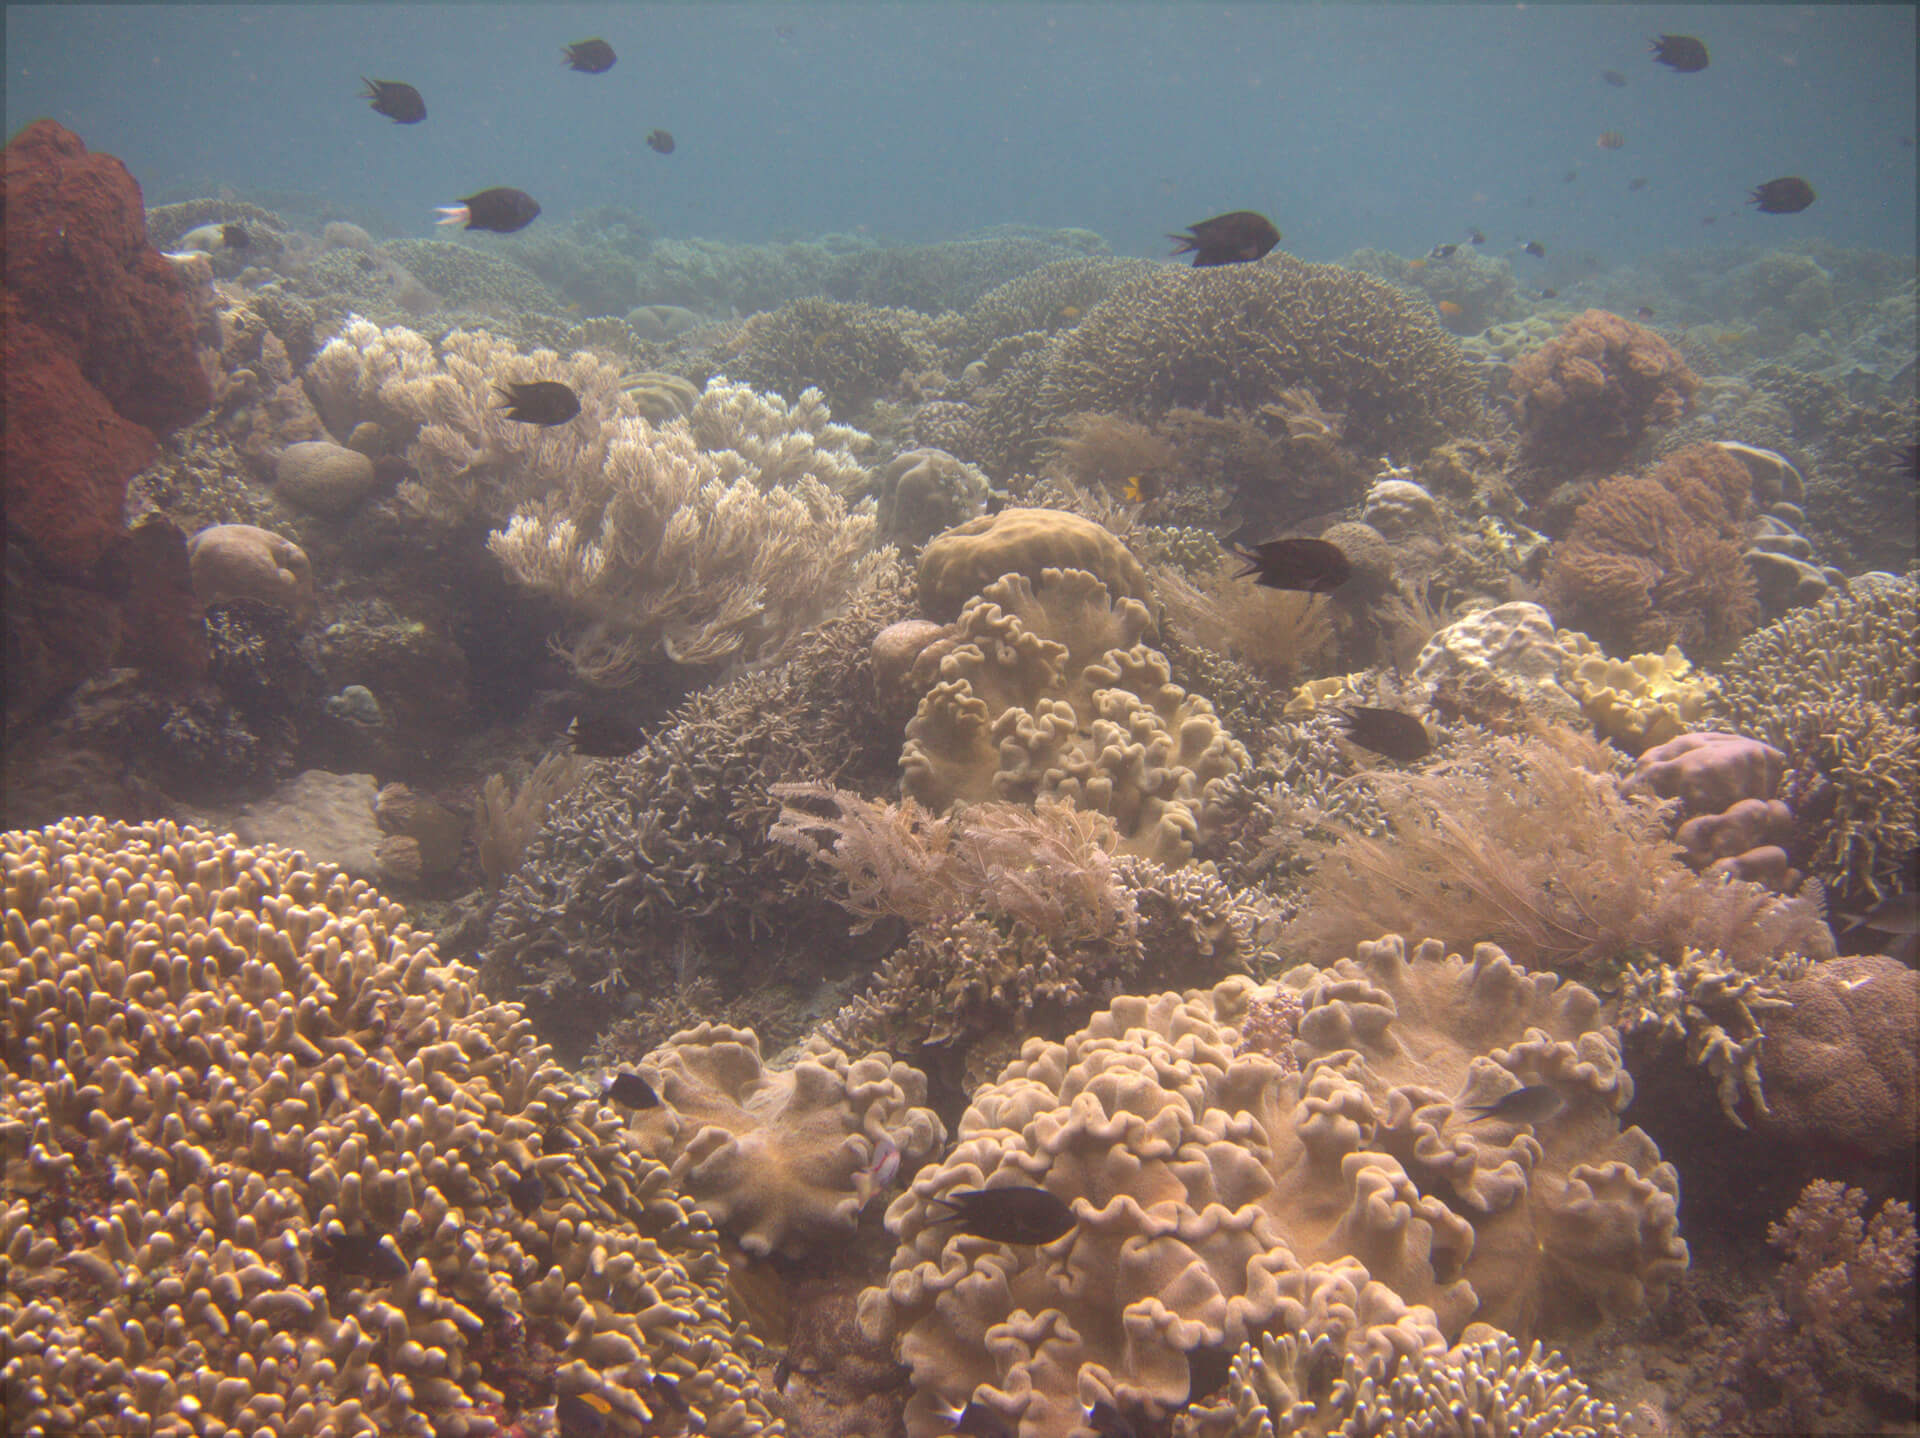 Bunaken Island, Manado, Indonesia - Coral reef 2